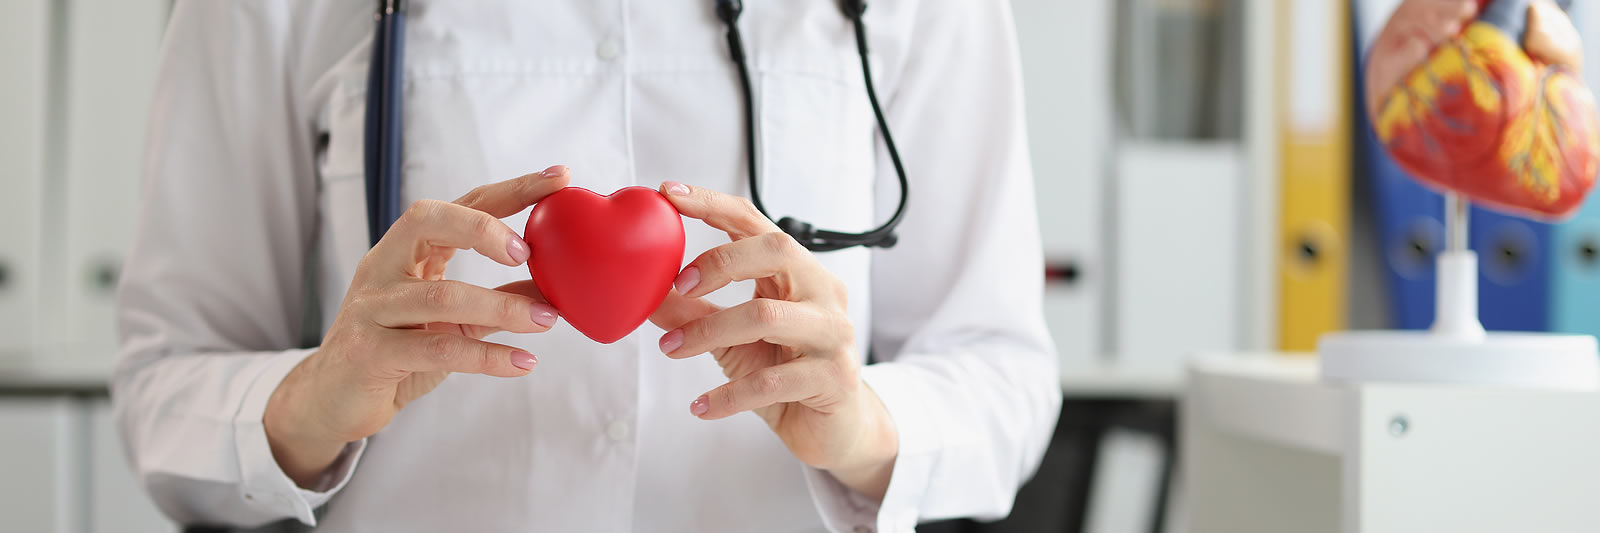 Is Heart Disease Preventable?